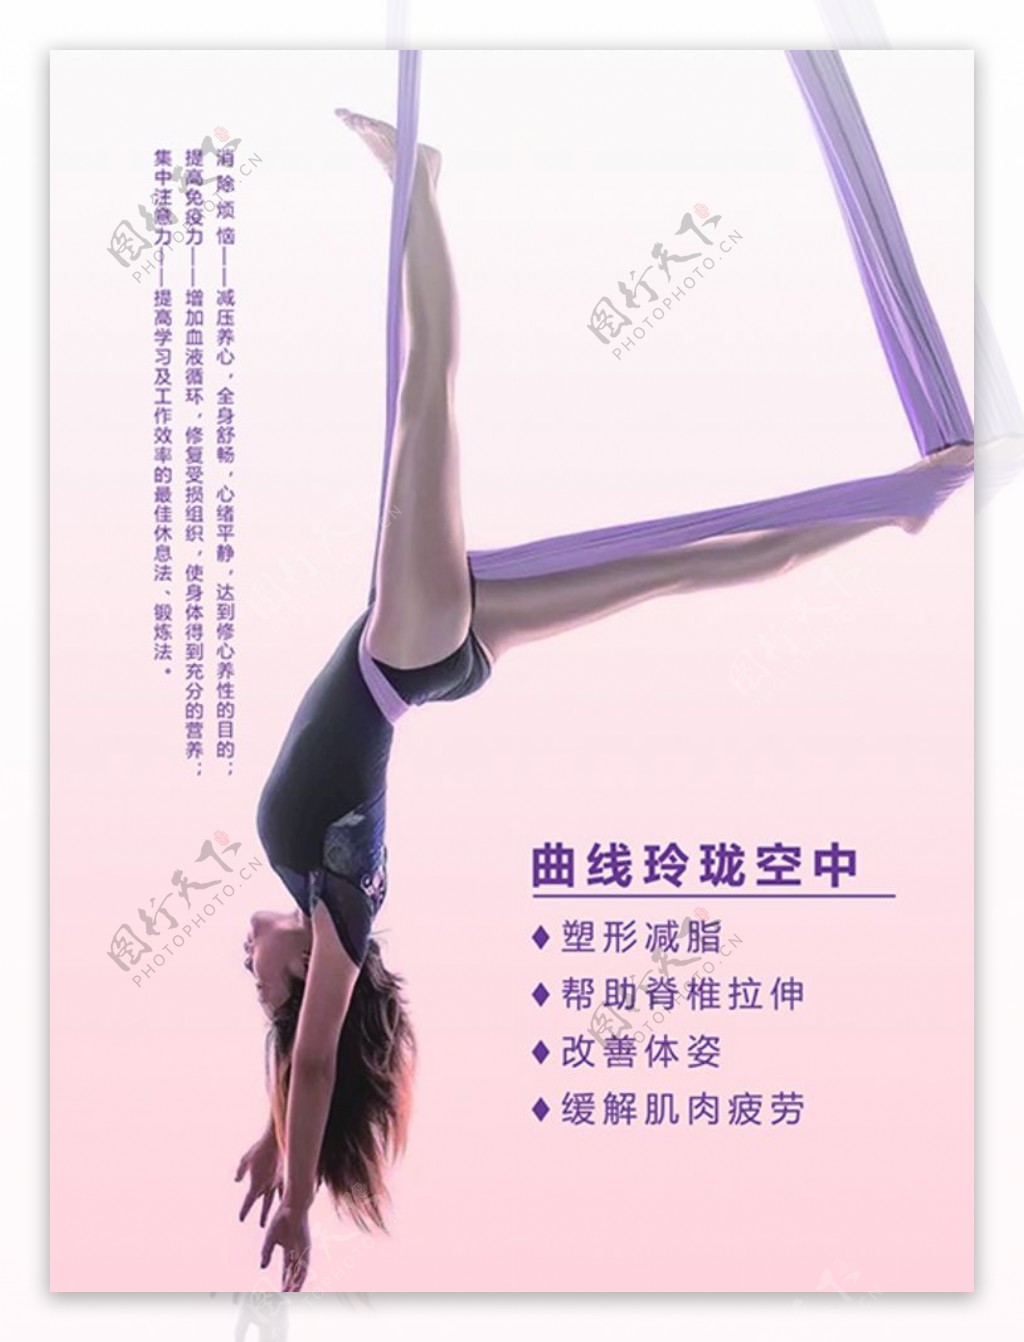 瑜伽海报空中瑜伽图片